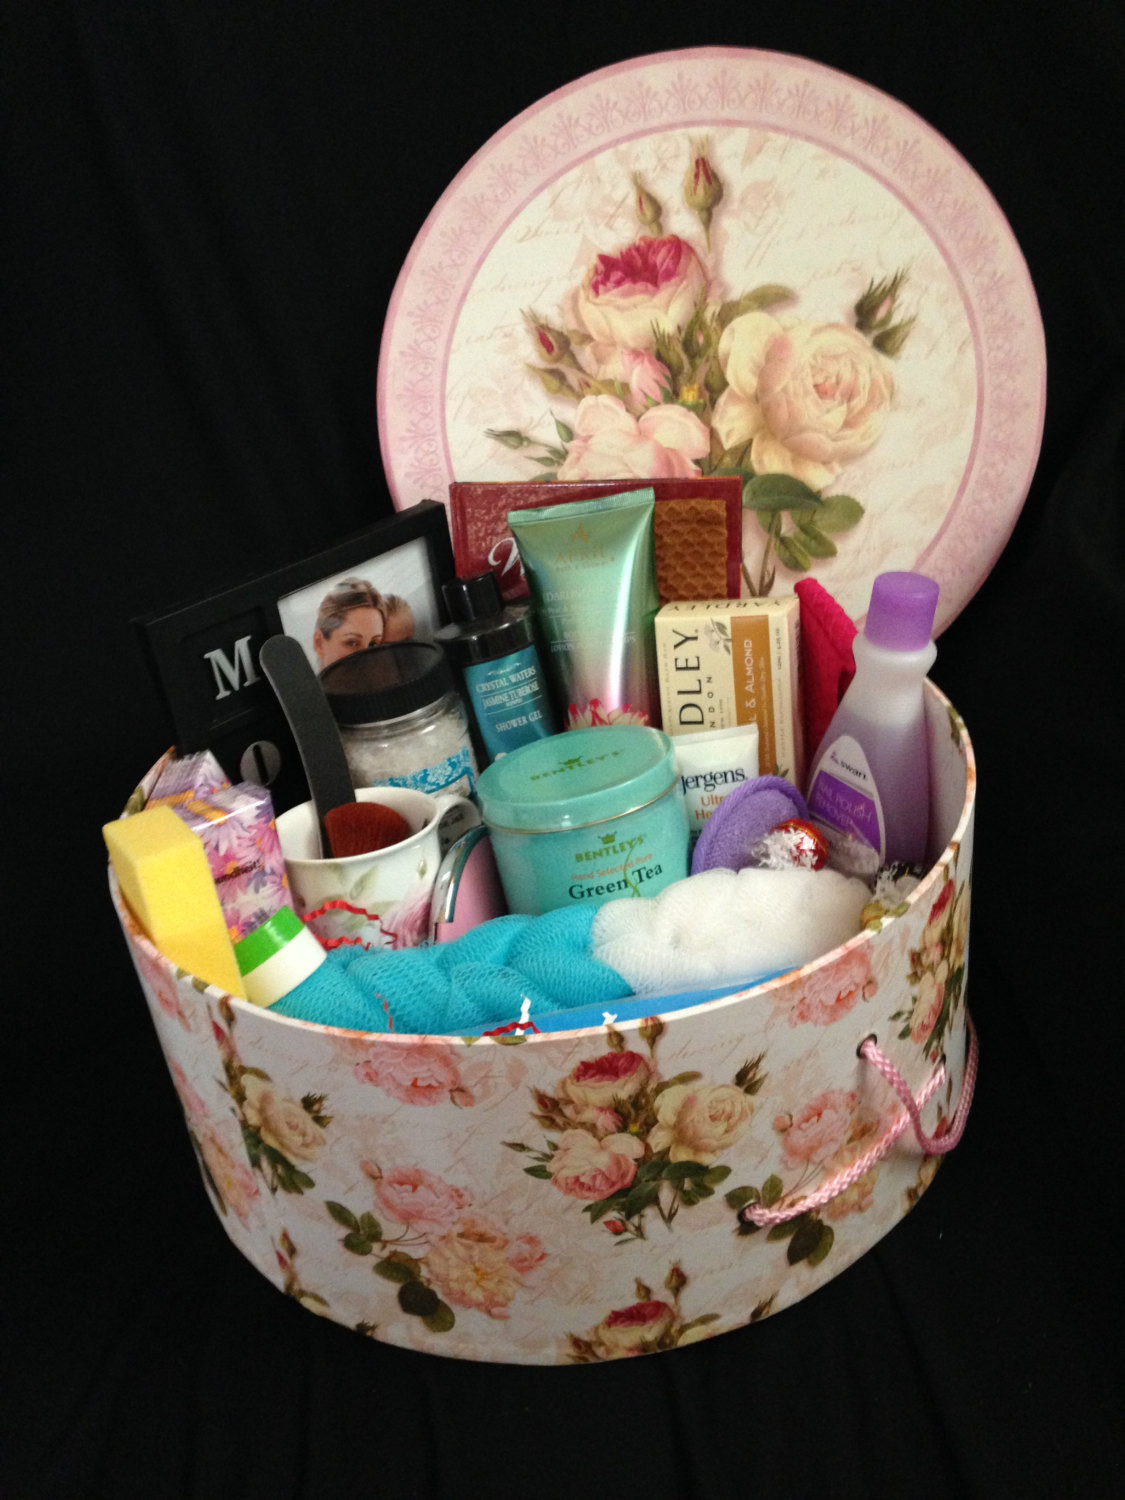 Pampering Gift Basket Ideas
 Mother s Day Gift Basket Pamper Mom